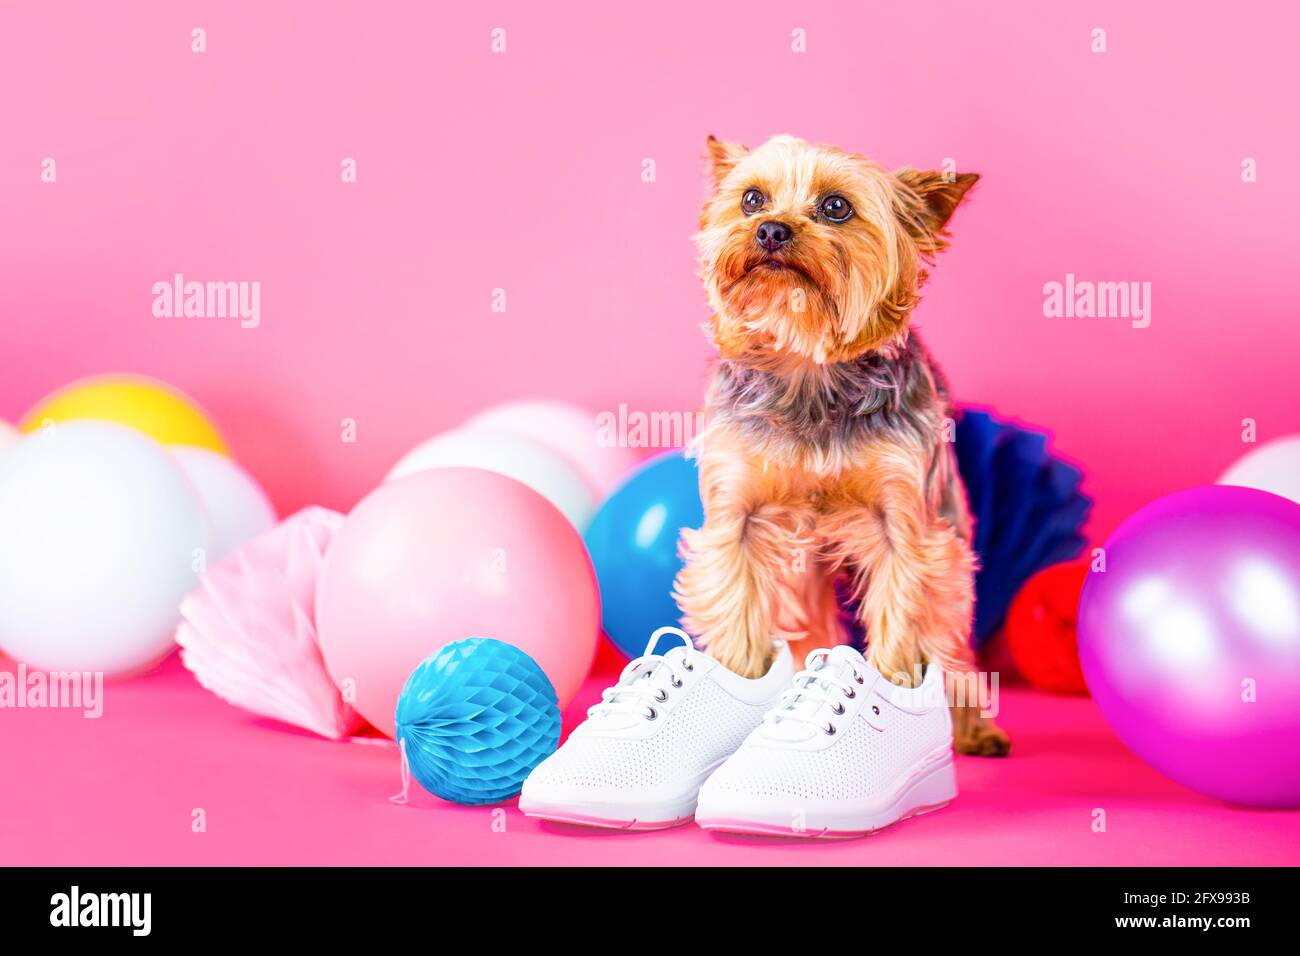 Hundeschuhe. Yorkshire Terrier im Schuh. Netter Hund in Kleidung und  Schuhen Stockfotografie - Alamy